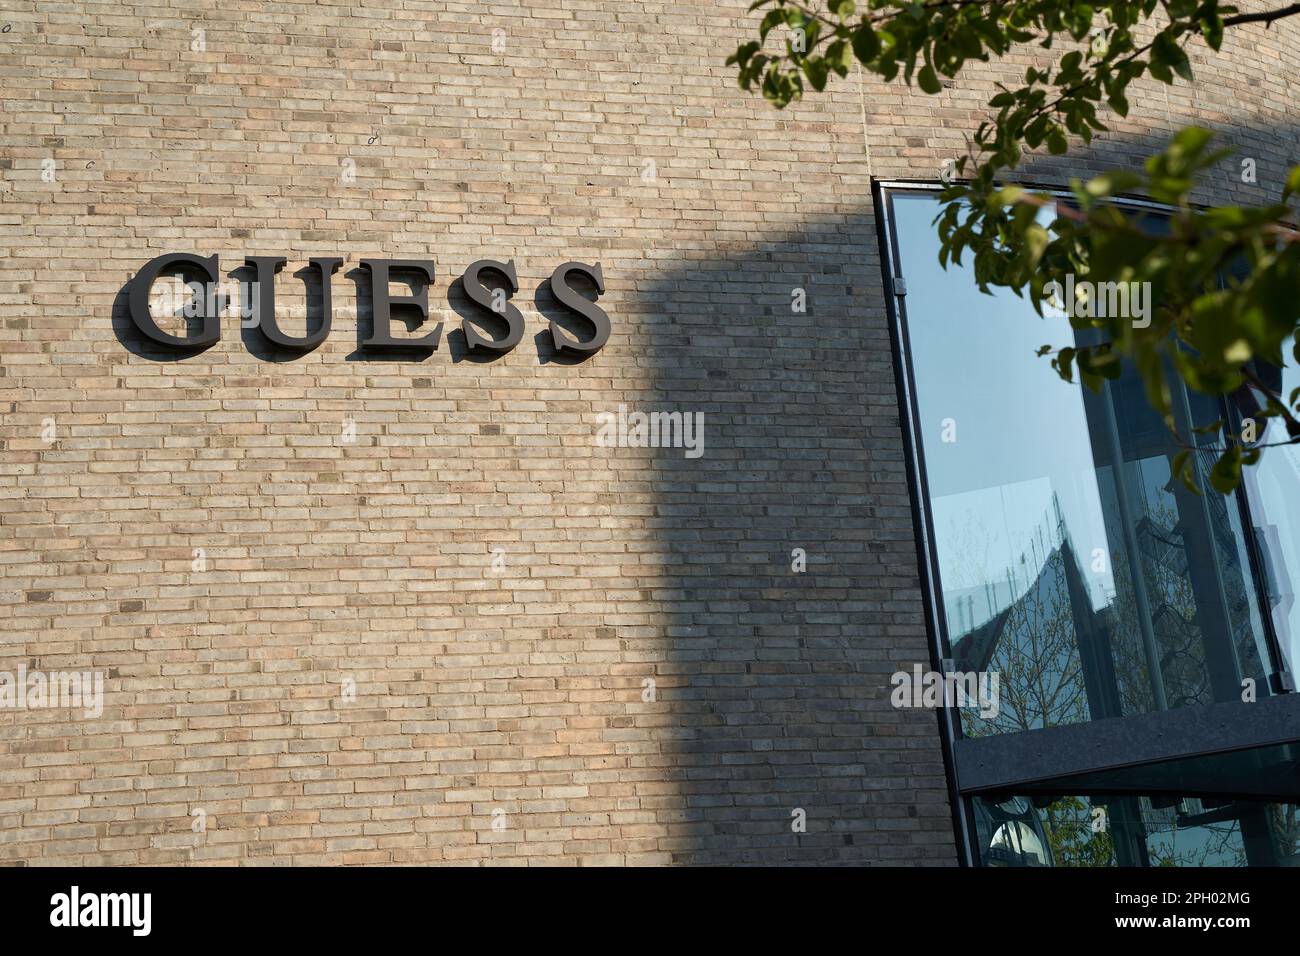 Metzingen - 03. Mai 2021: Guess Modefirma. Schwarze Buchstaben an grauer Ziegelwand. Shop-Fenster und grüne Zweige befinden sich auf der rechten Seite Stockfoto